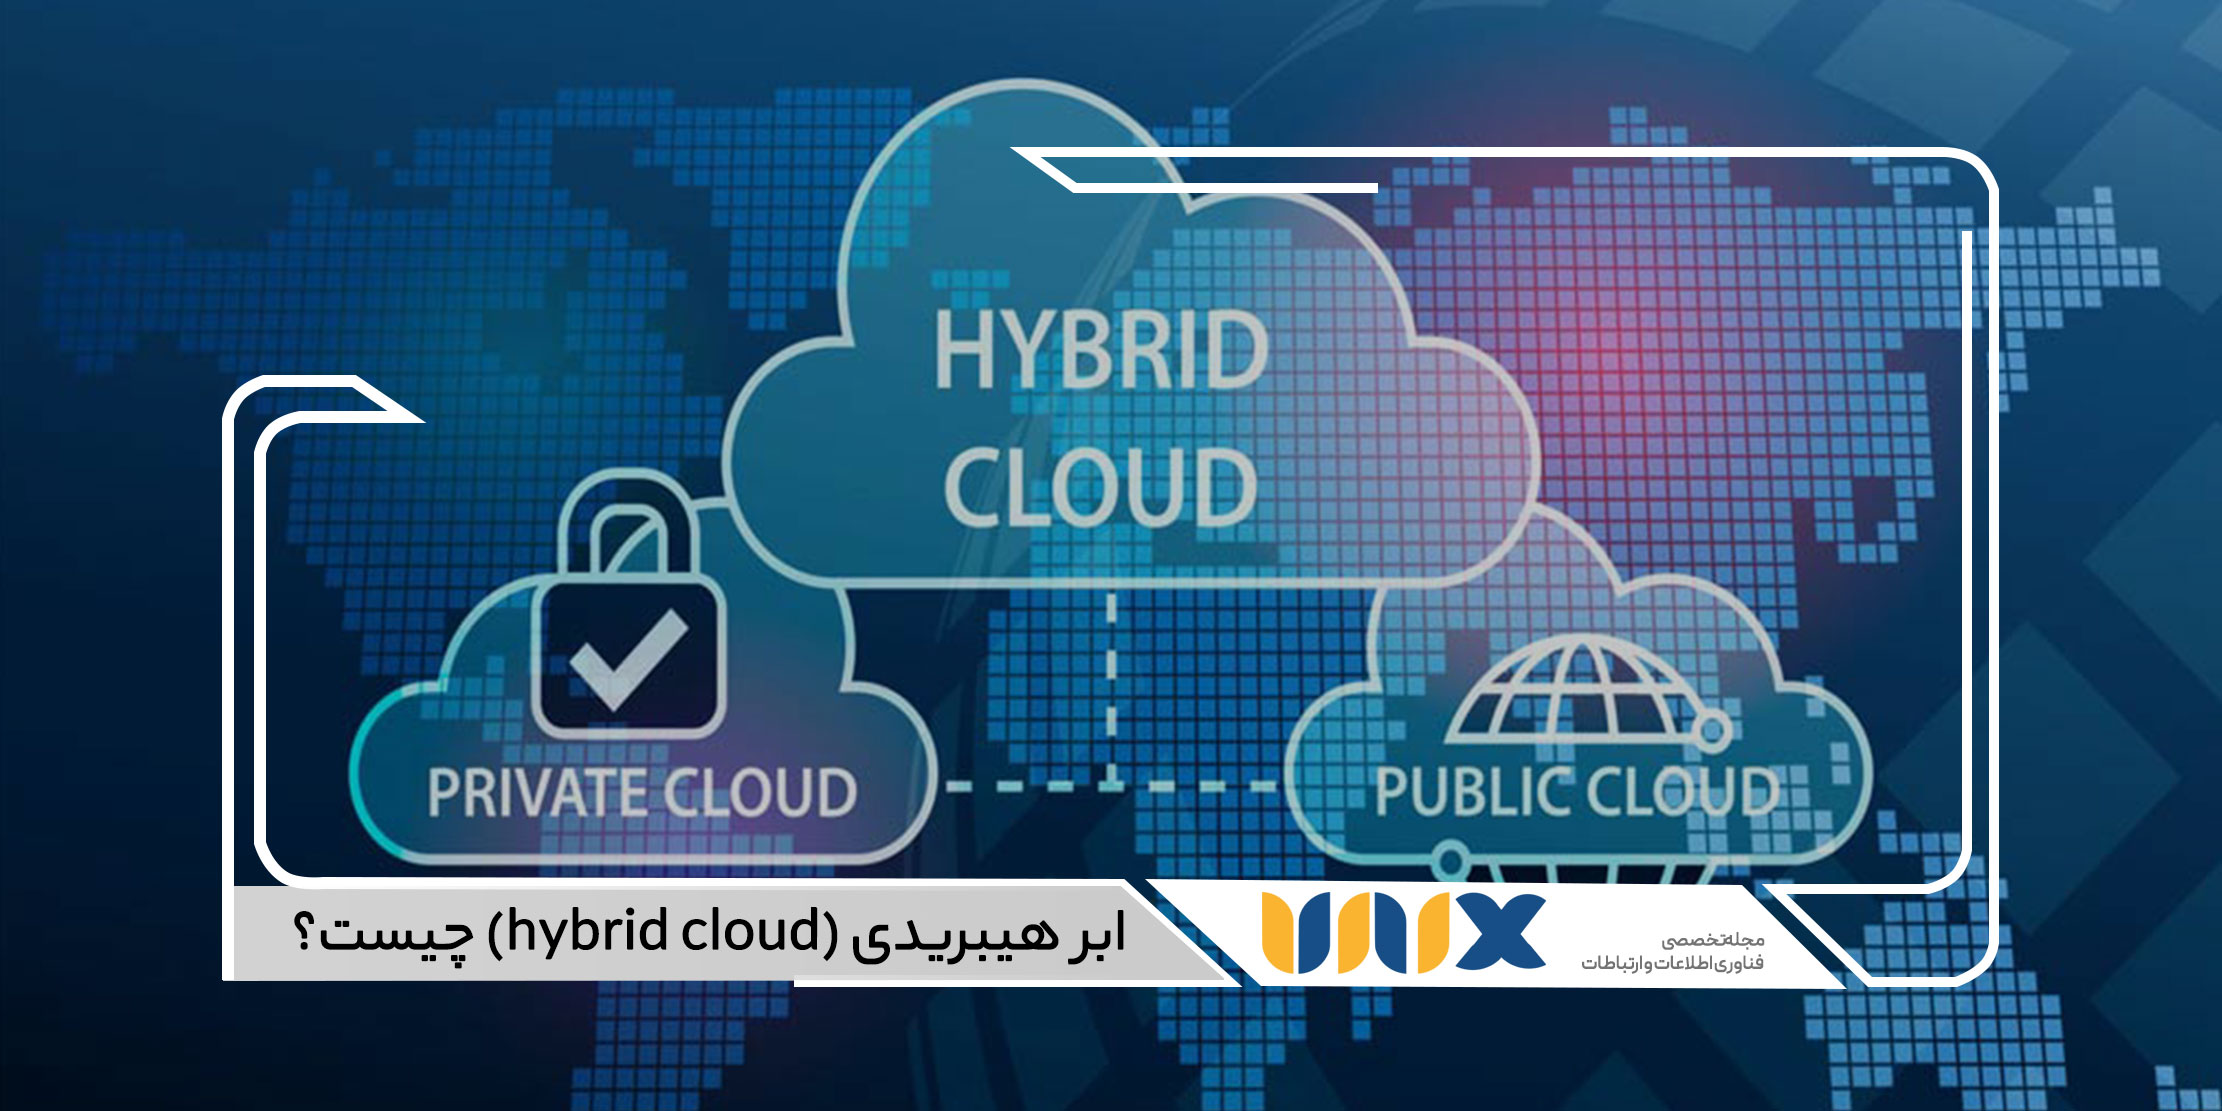 ابر هیبریدی (hybrid cloud)